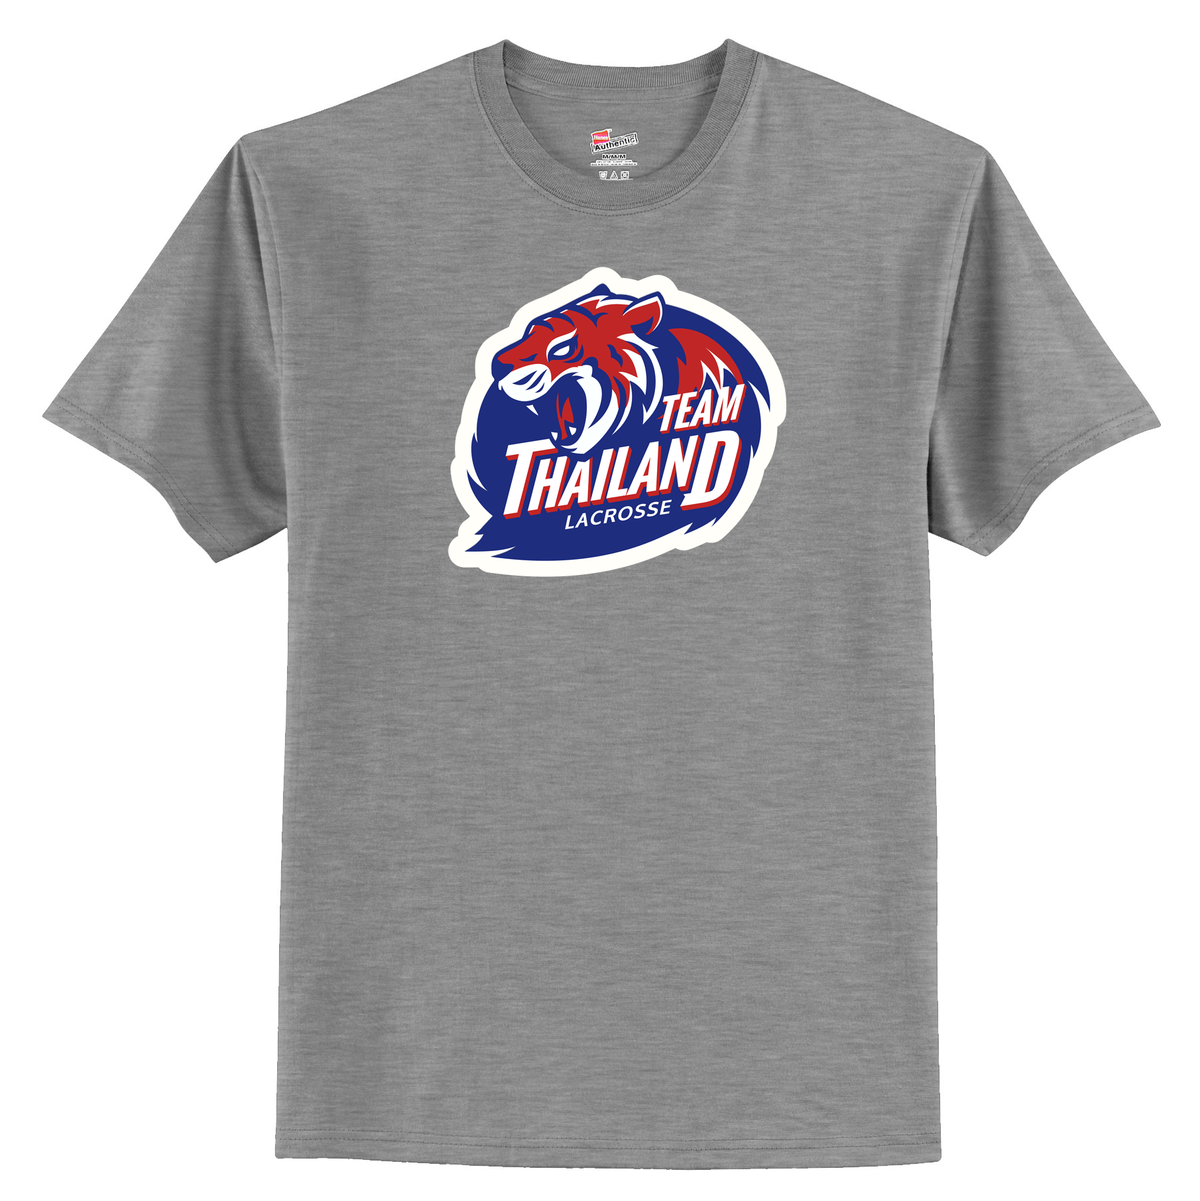 Thailand Lacrosse T-Shirt